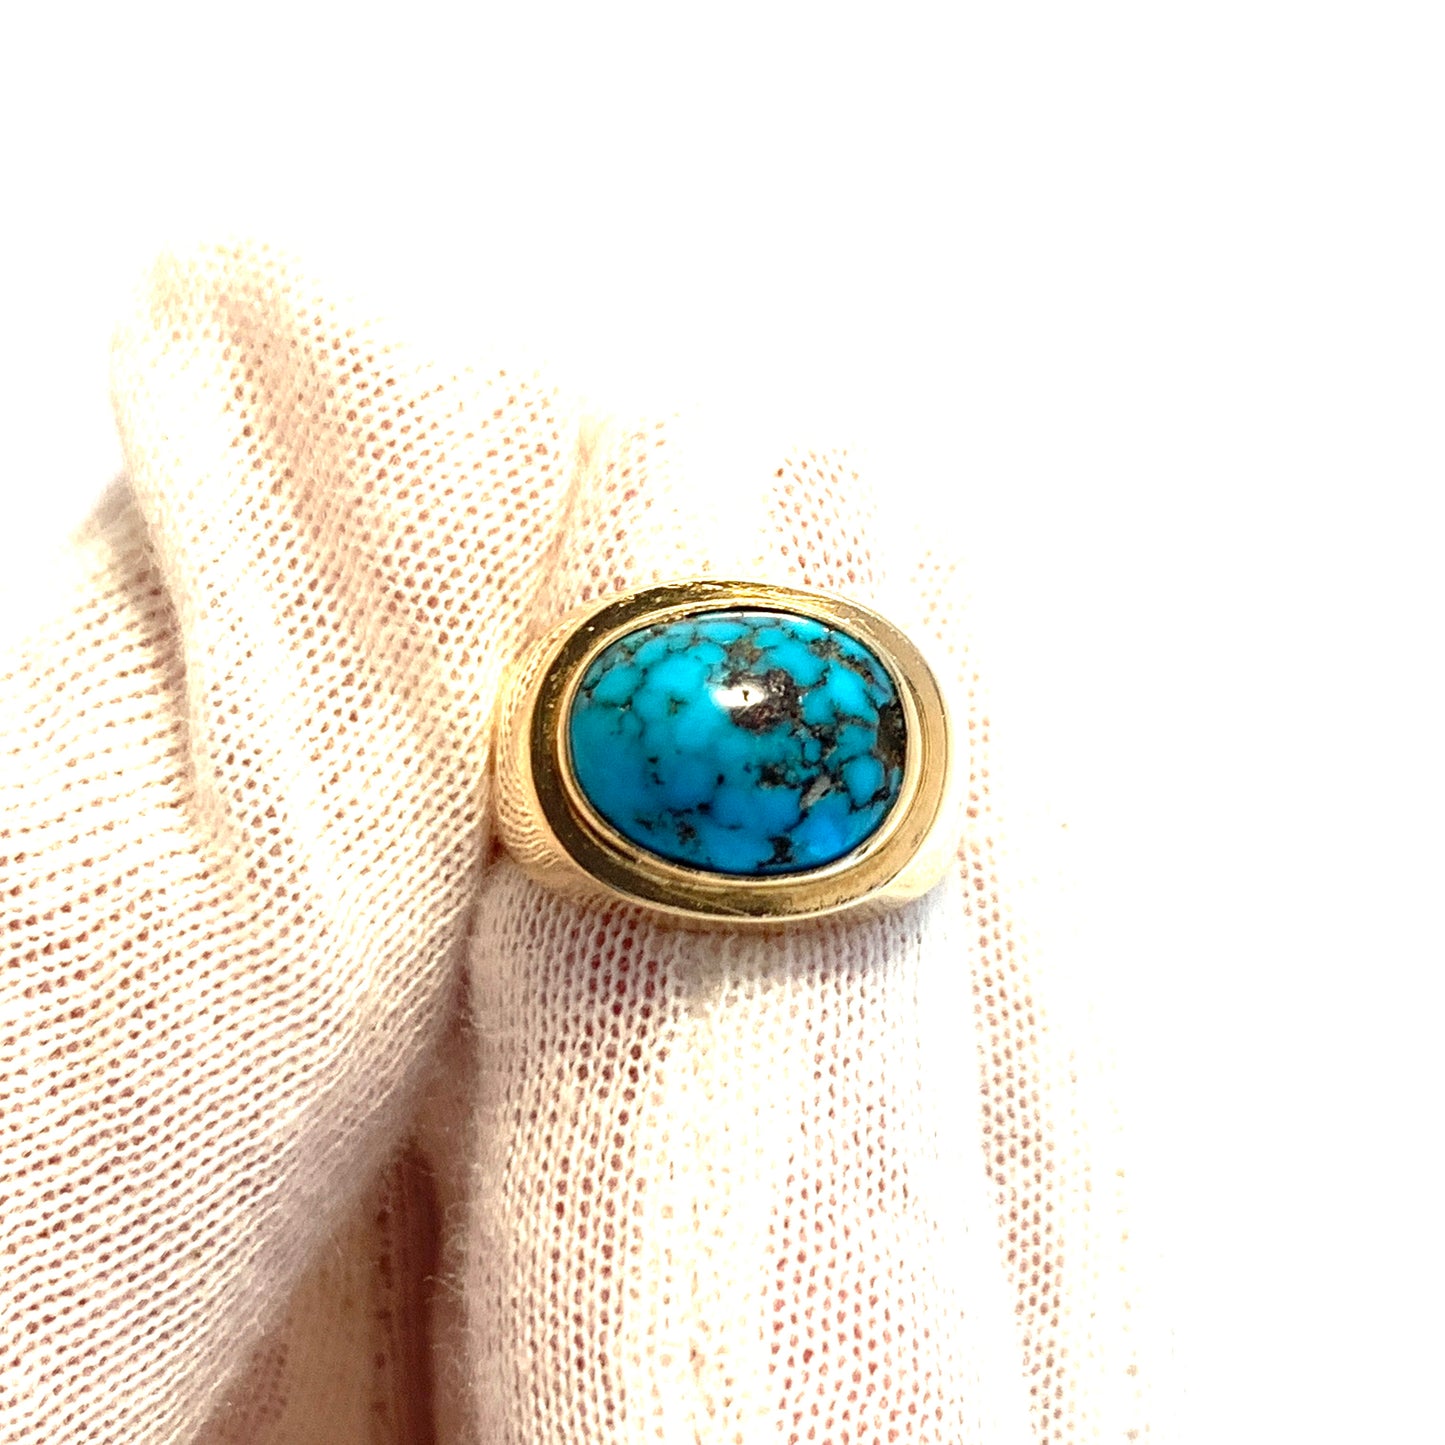 Olle Torrestad, Sweden 1962. Vintage 18k Gold Turquoise Ring.